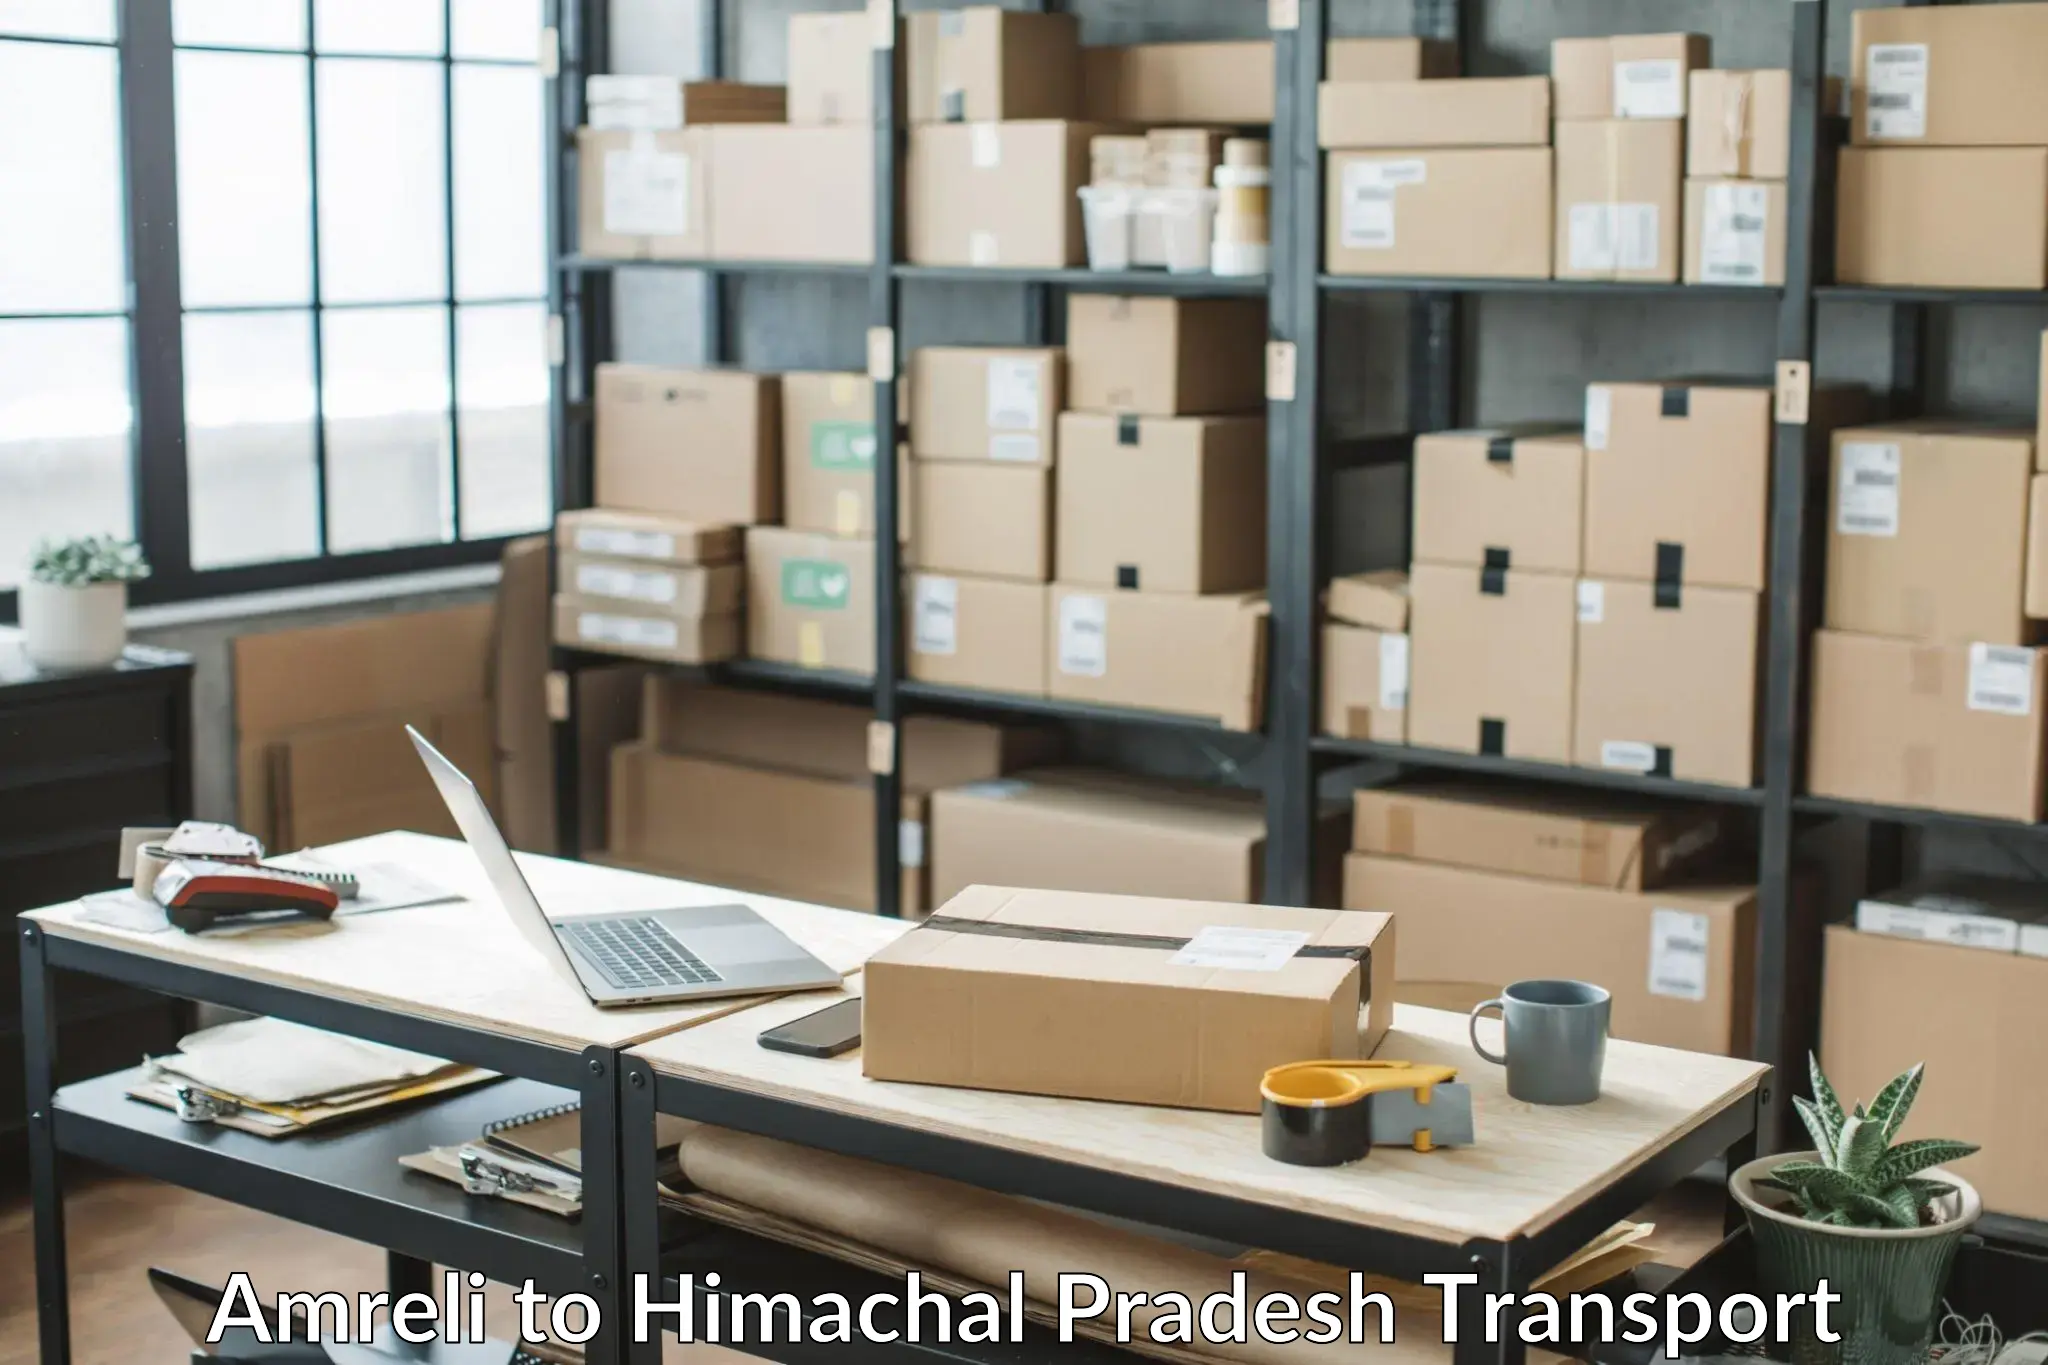 Delivery service Amreli to Una Himachal Pradesh